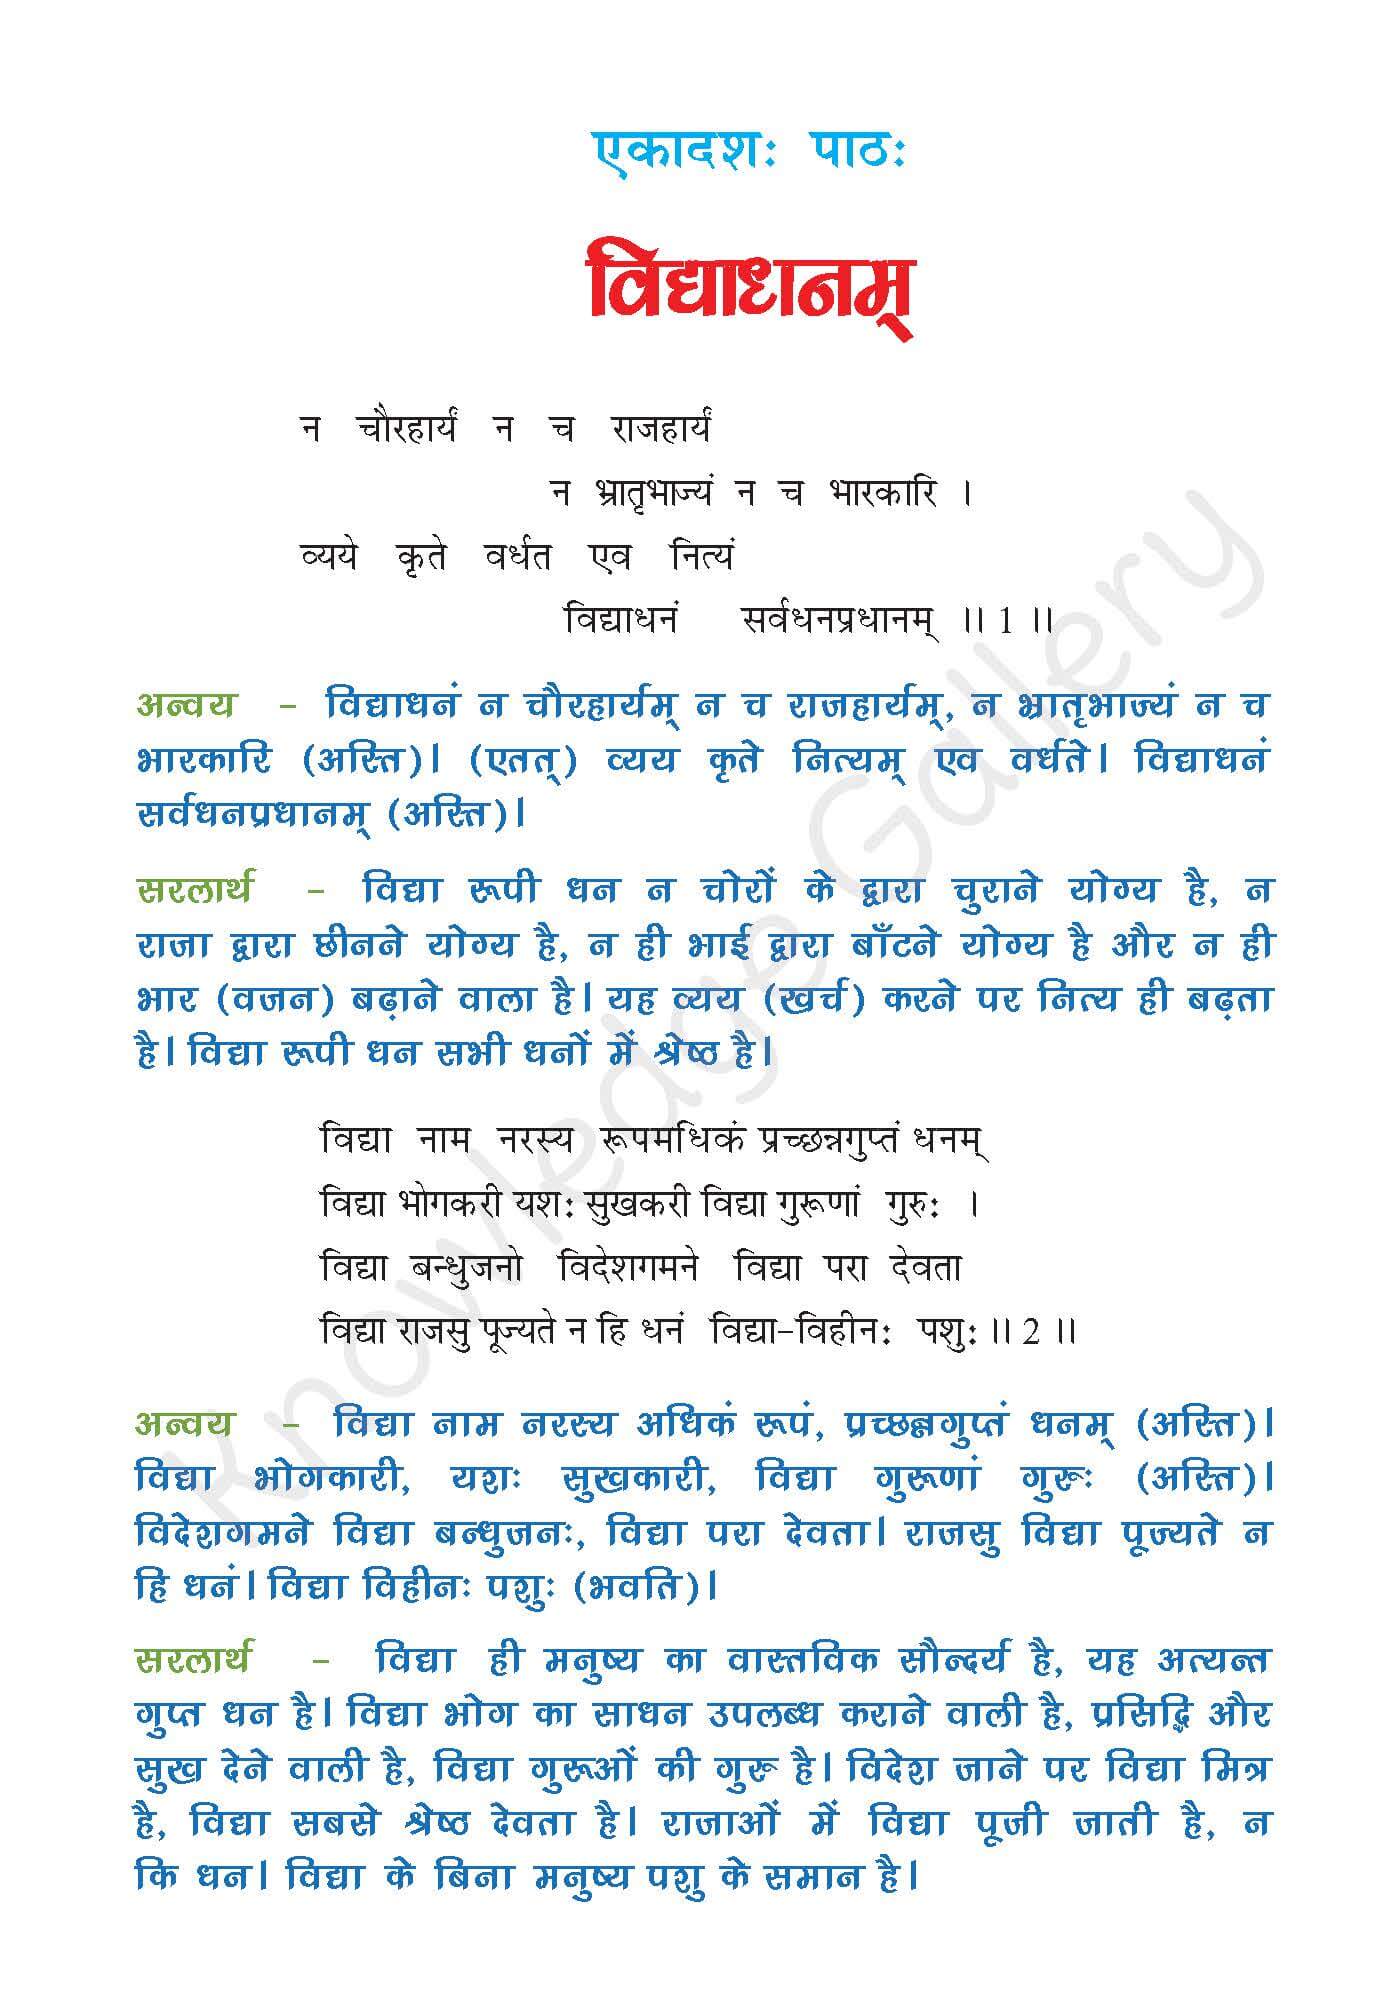 NCERT Solution For Class 7 Sanskrit Chapter 11 part 1